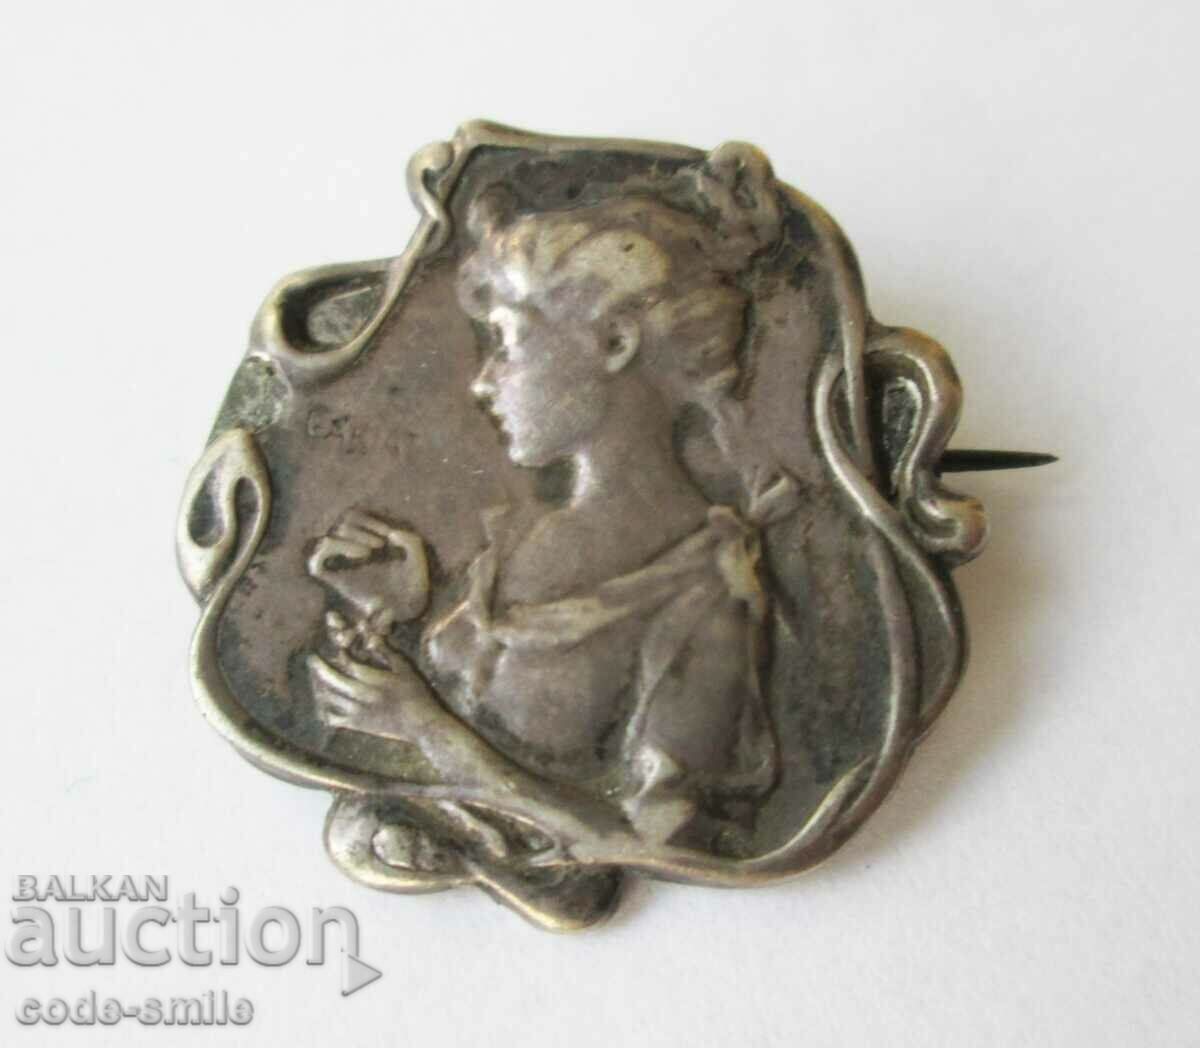 Broșă bătrână din argint bijuterie Art Nouveau semnată